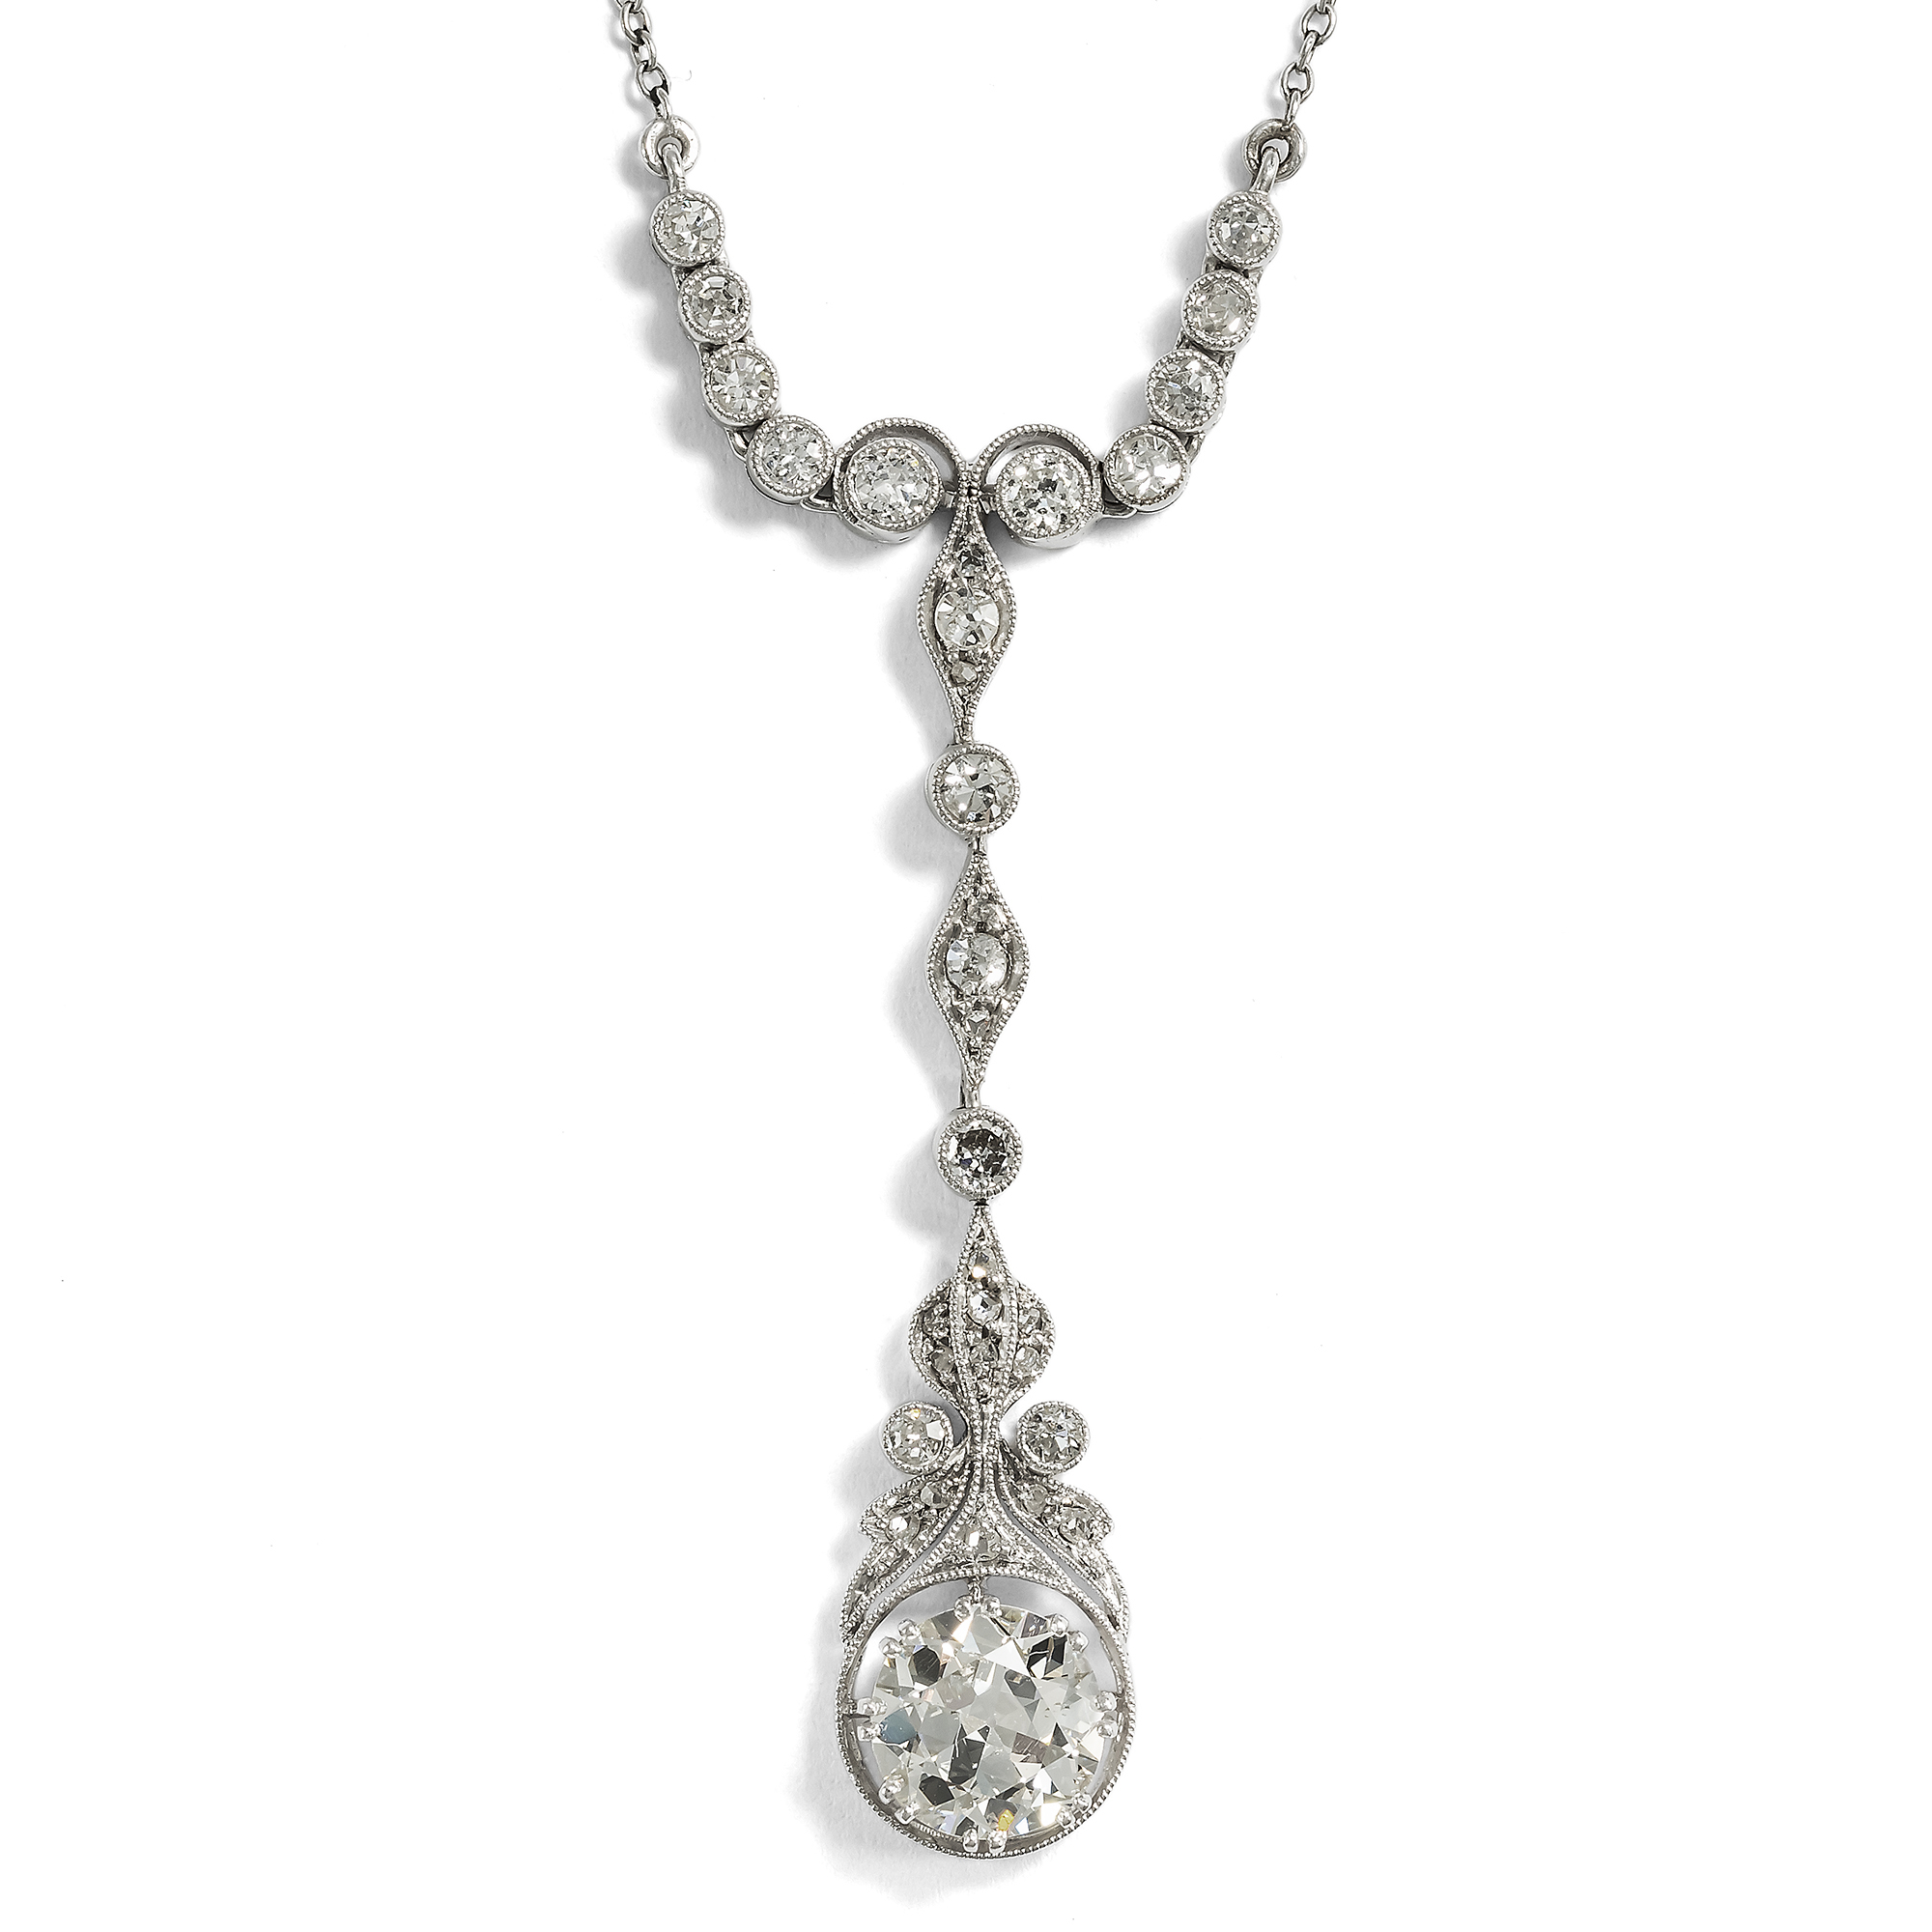 Delicate Antique Diamond and Platinum Necklace, c. 1915